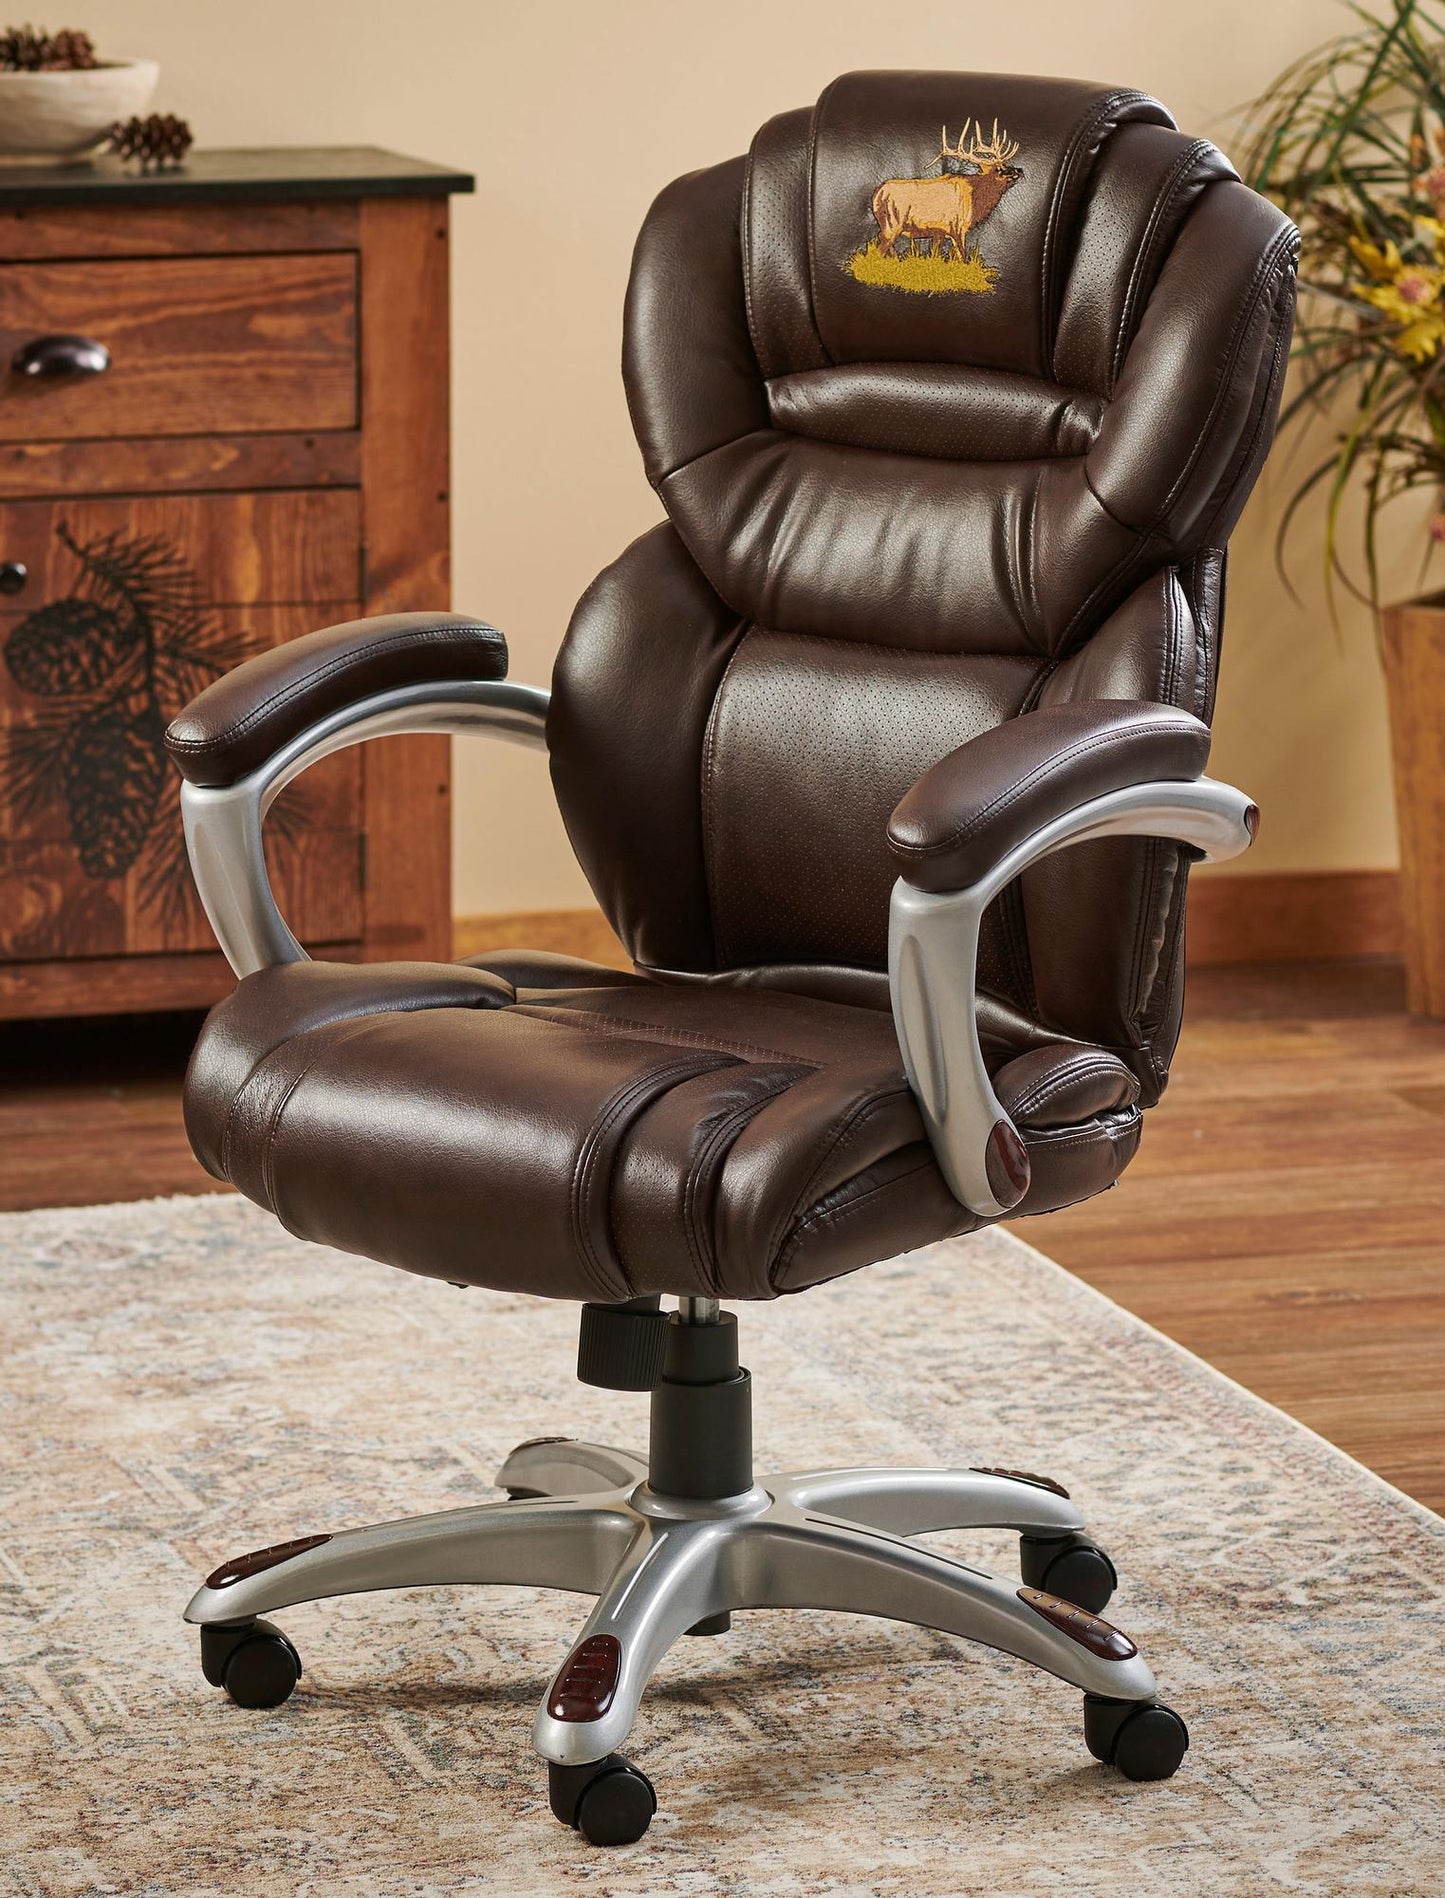 Elk Office Chair - Wild Wings